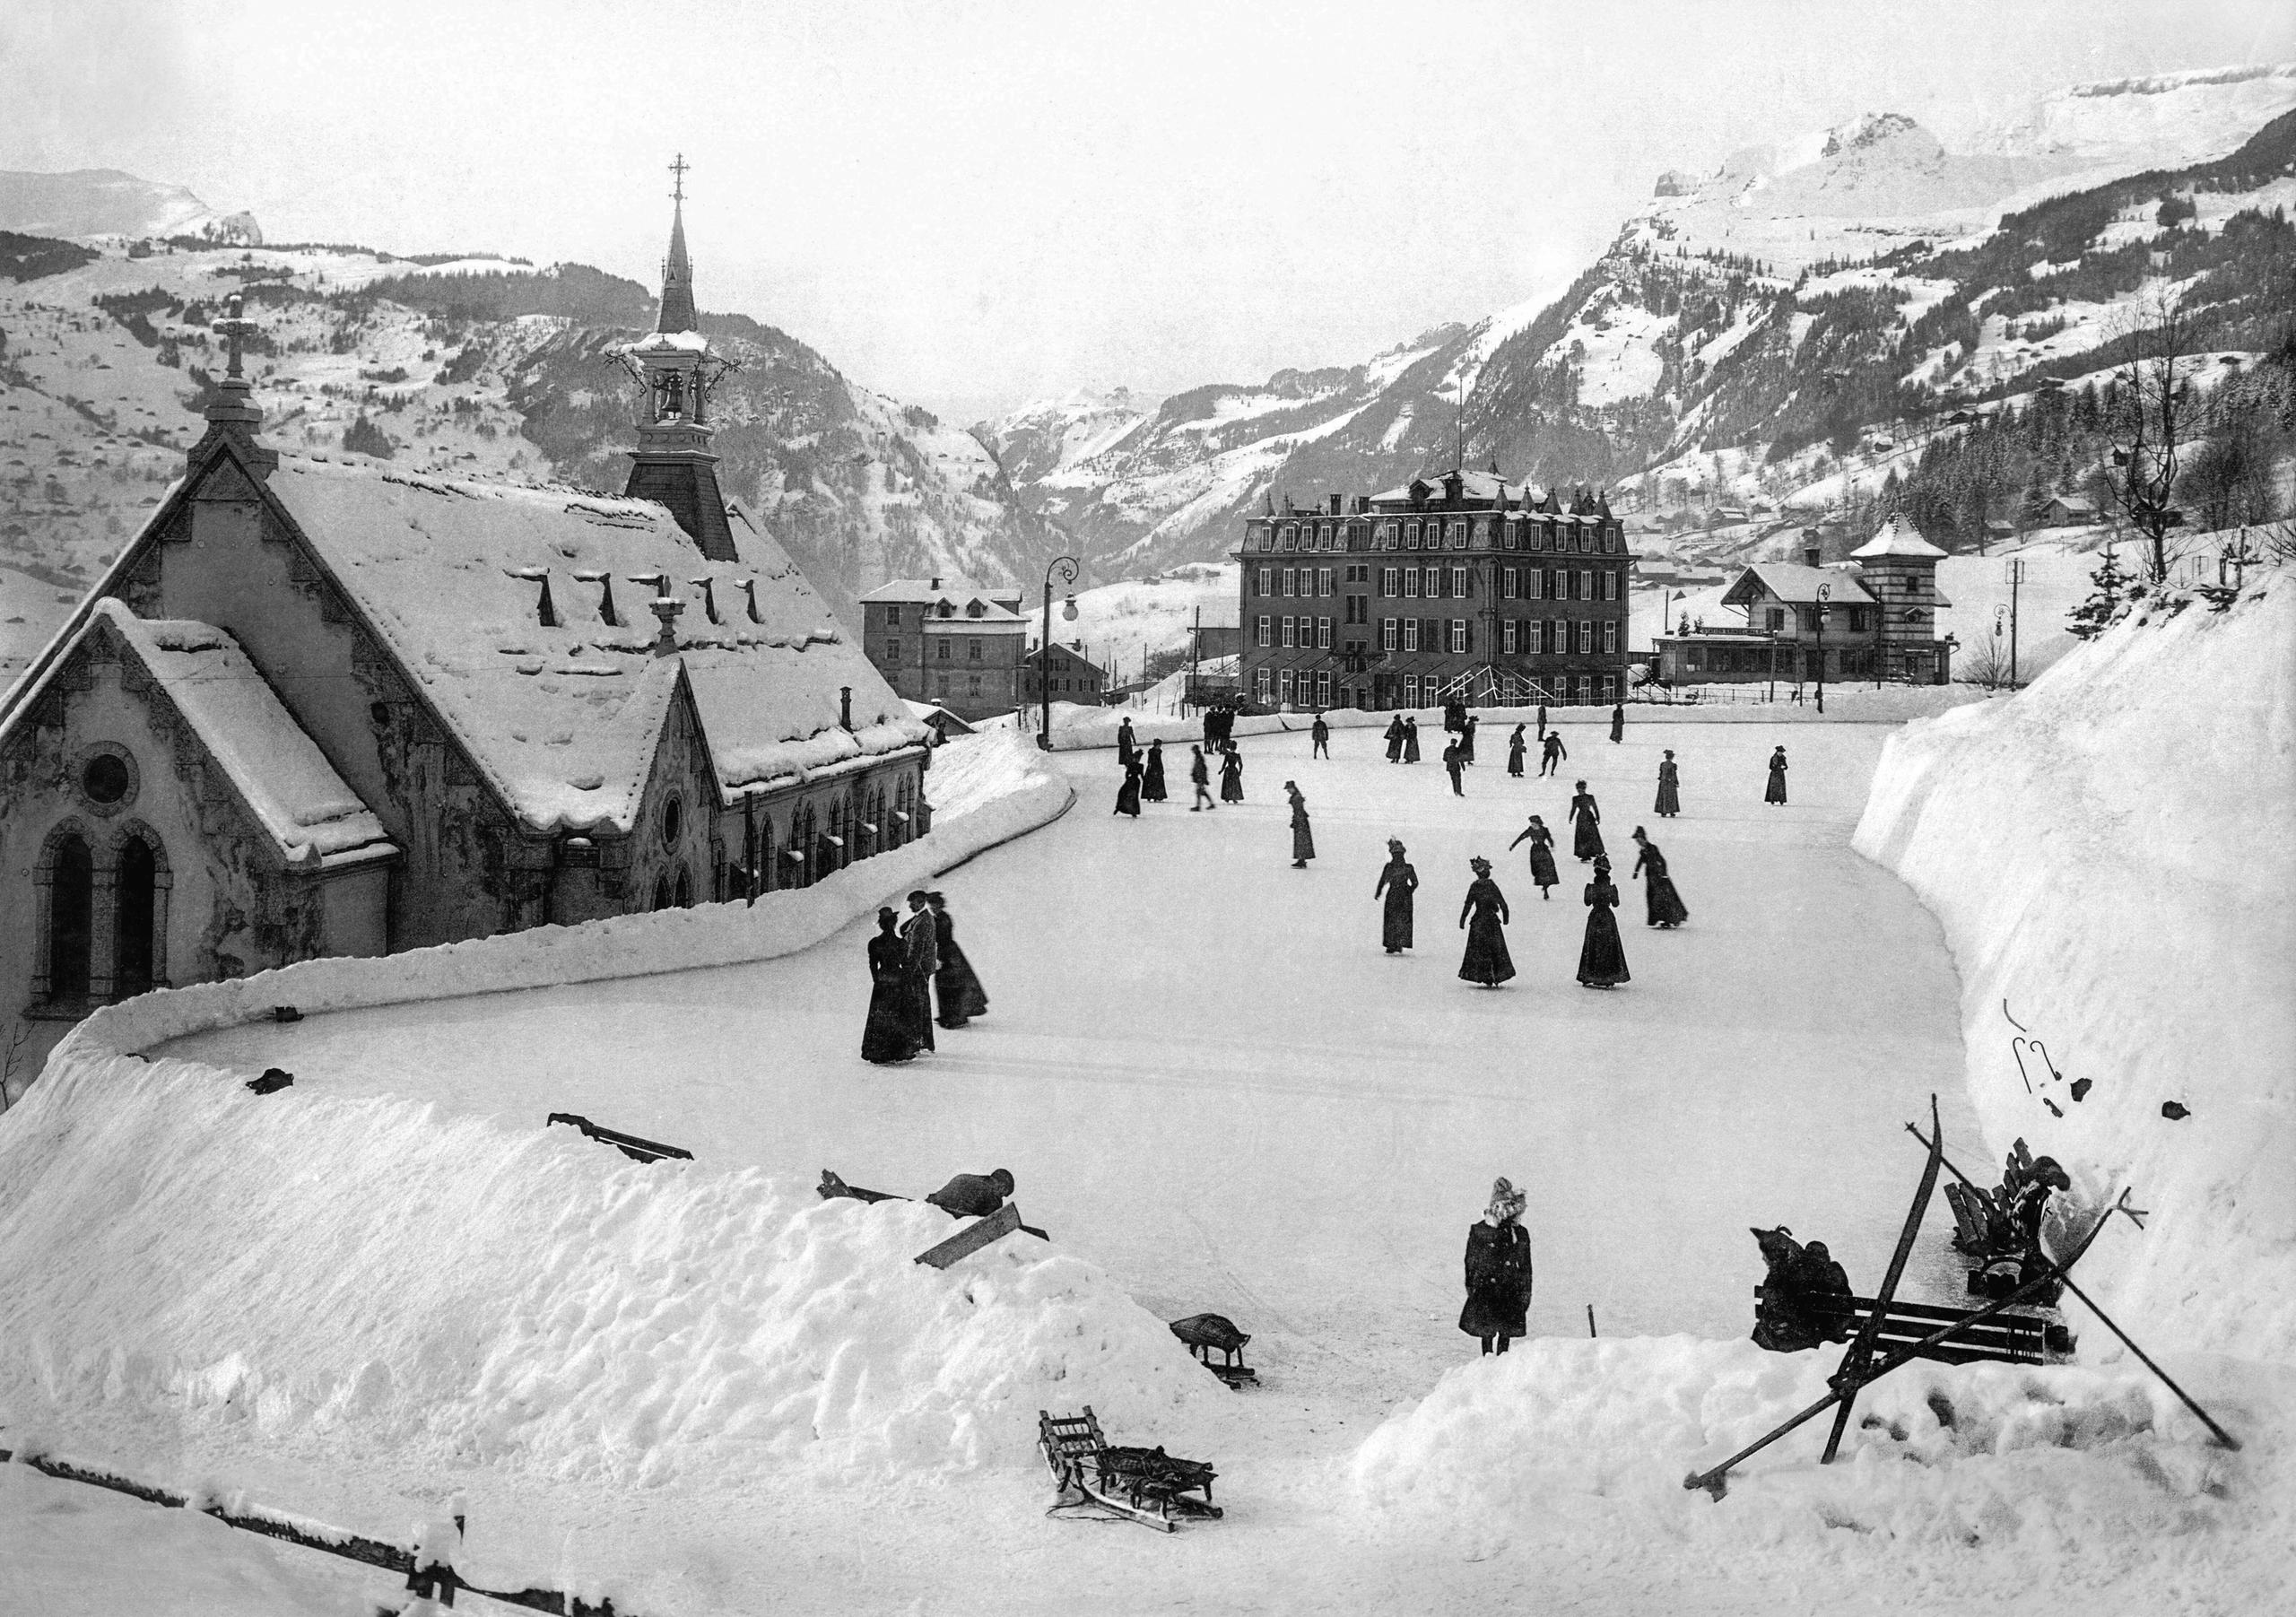 Paisaje invernal de montaña. En el centro, unas personas patinan en una pista de hielo al lado de una iglesia